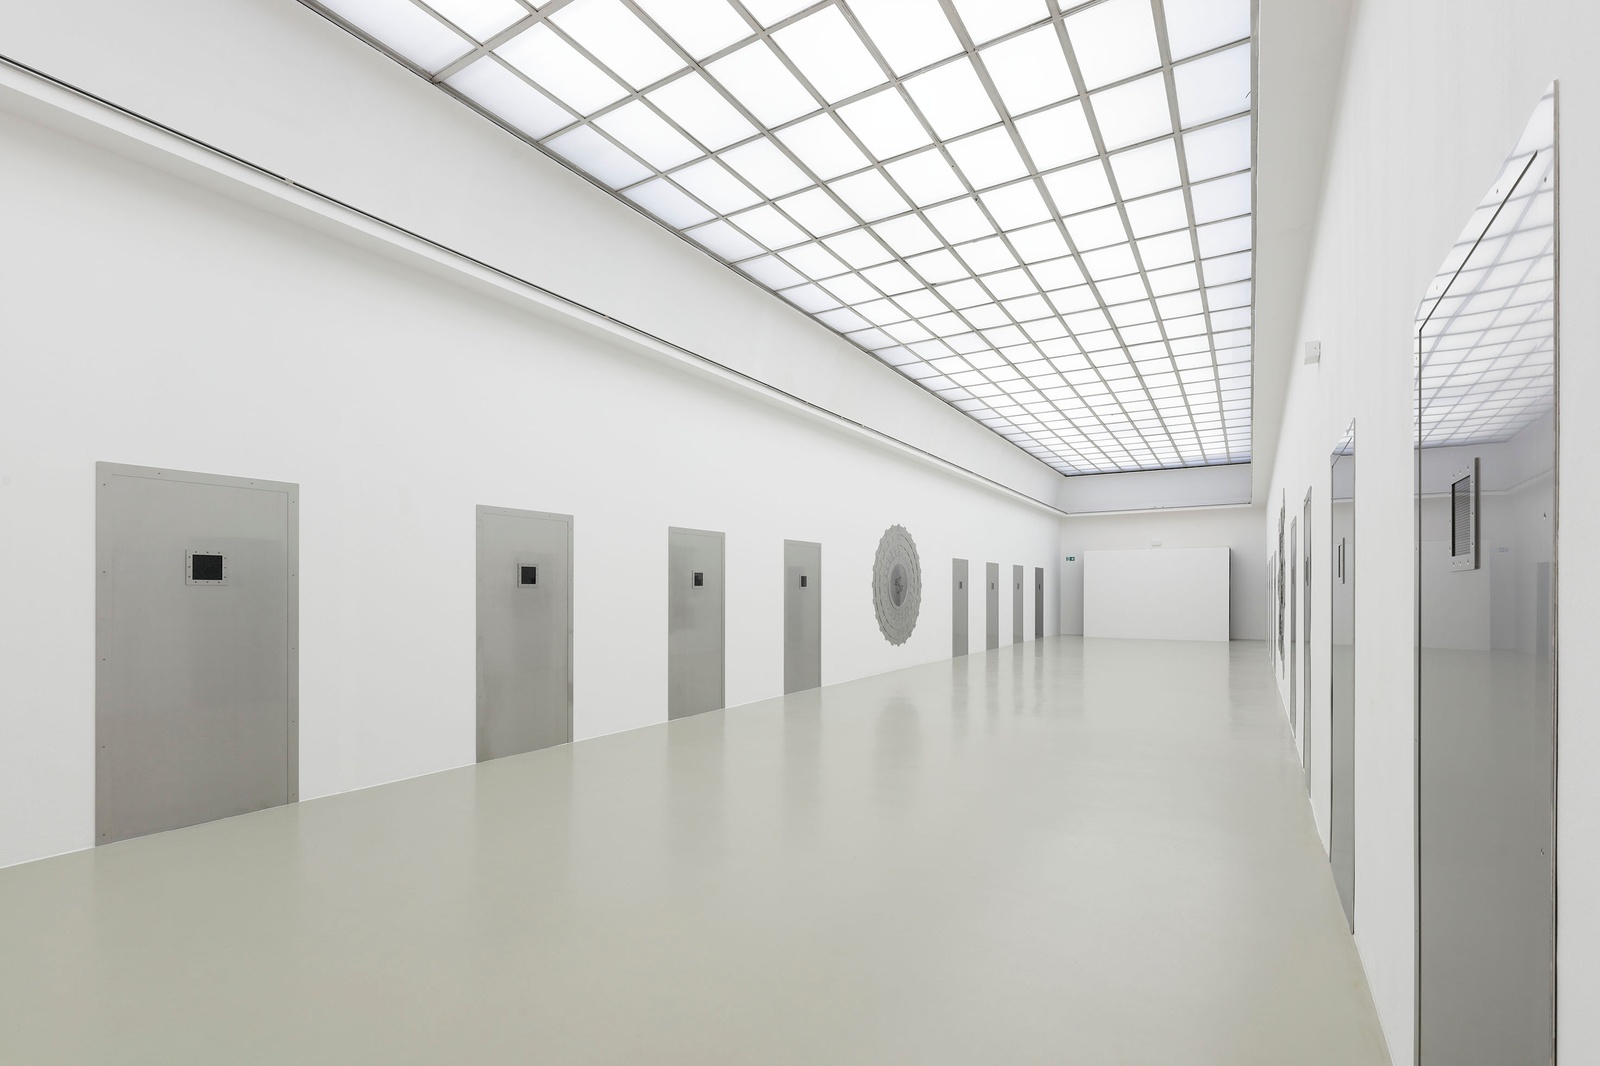 Installation view, ars viva - Preis für Bildende Kunst, Kunstverein Hannover, November 27, 2021 - January 16, 2022